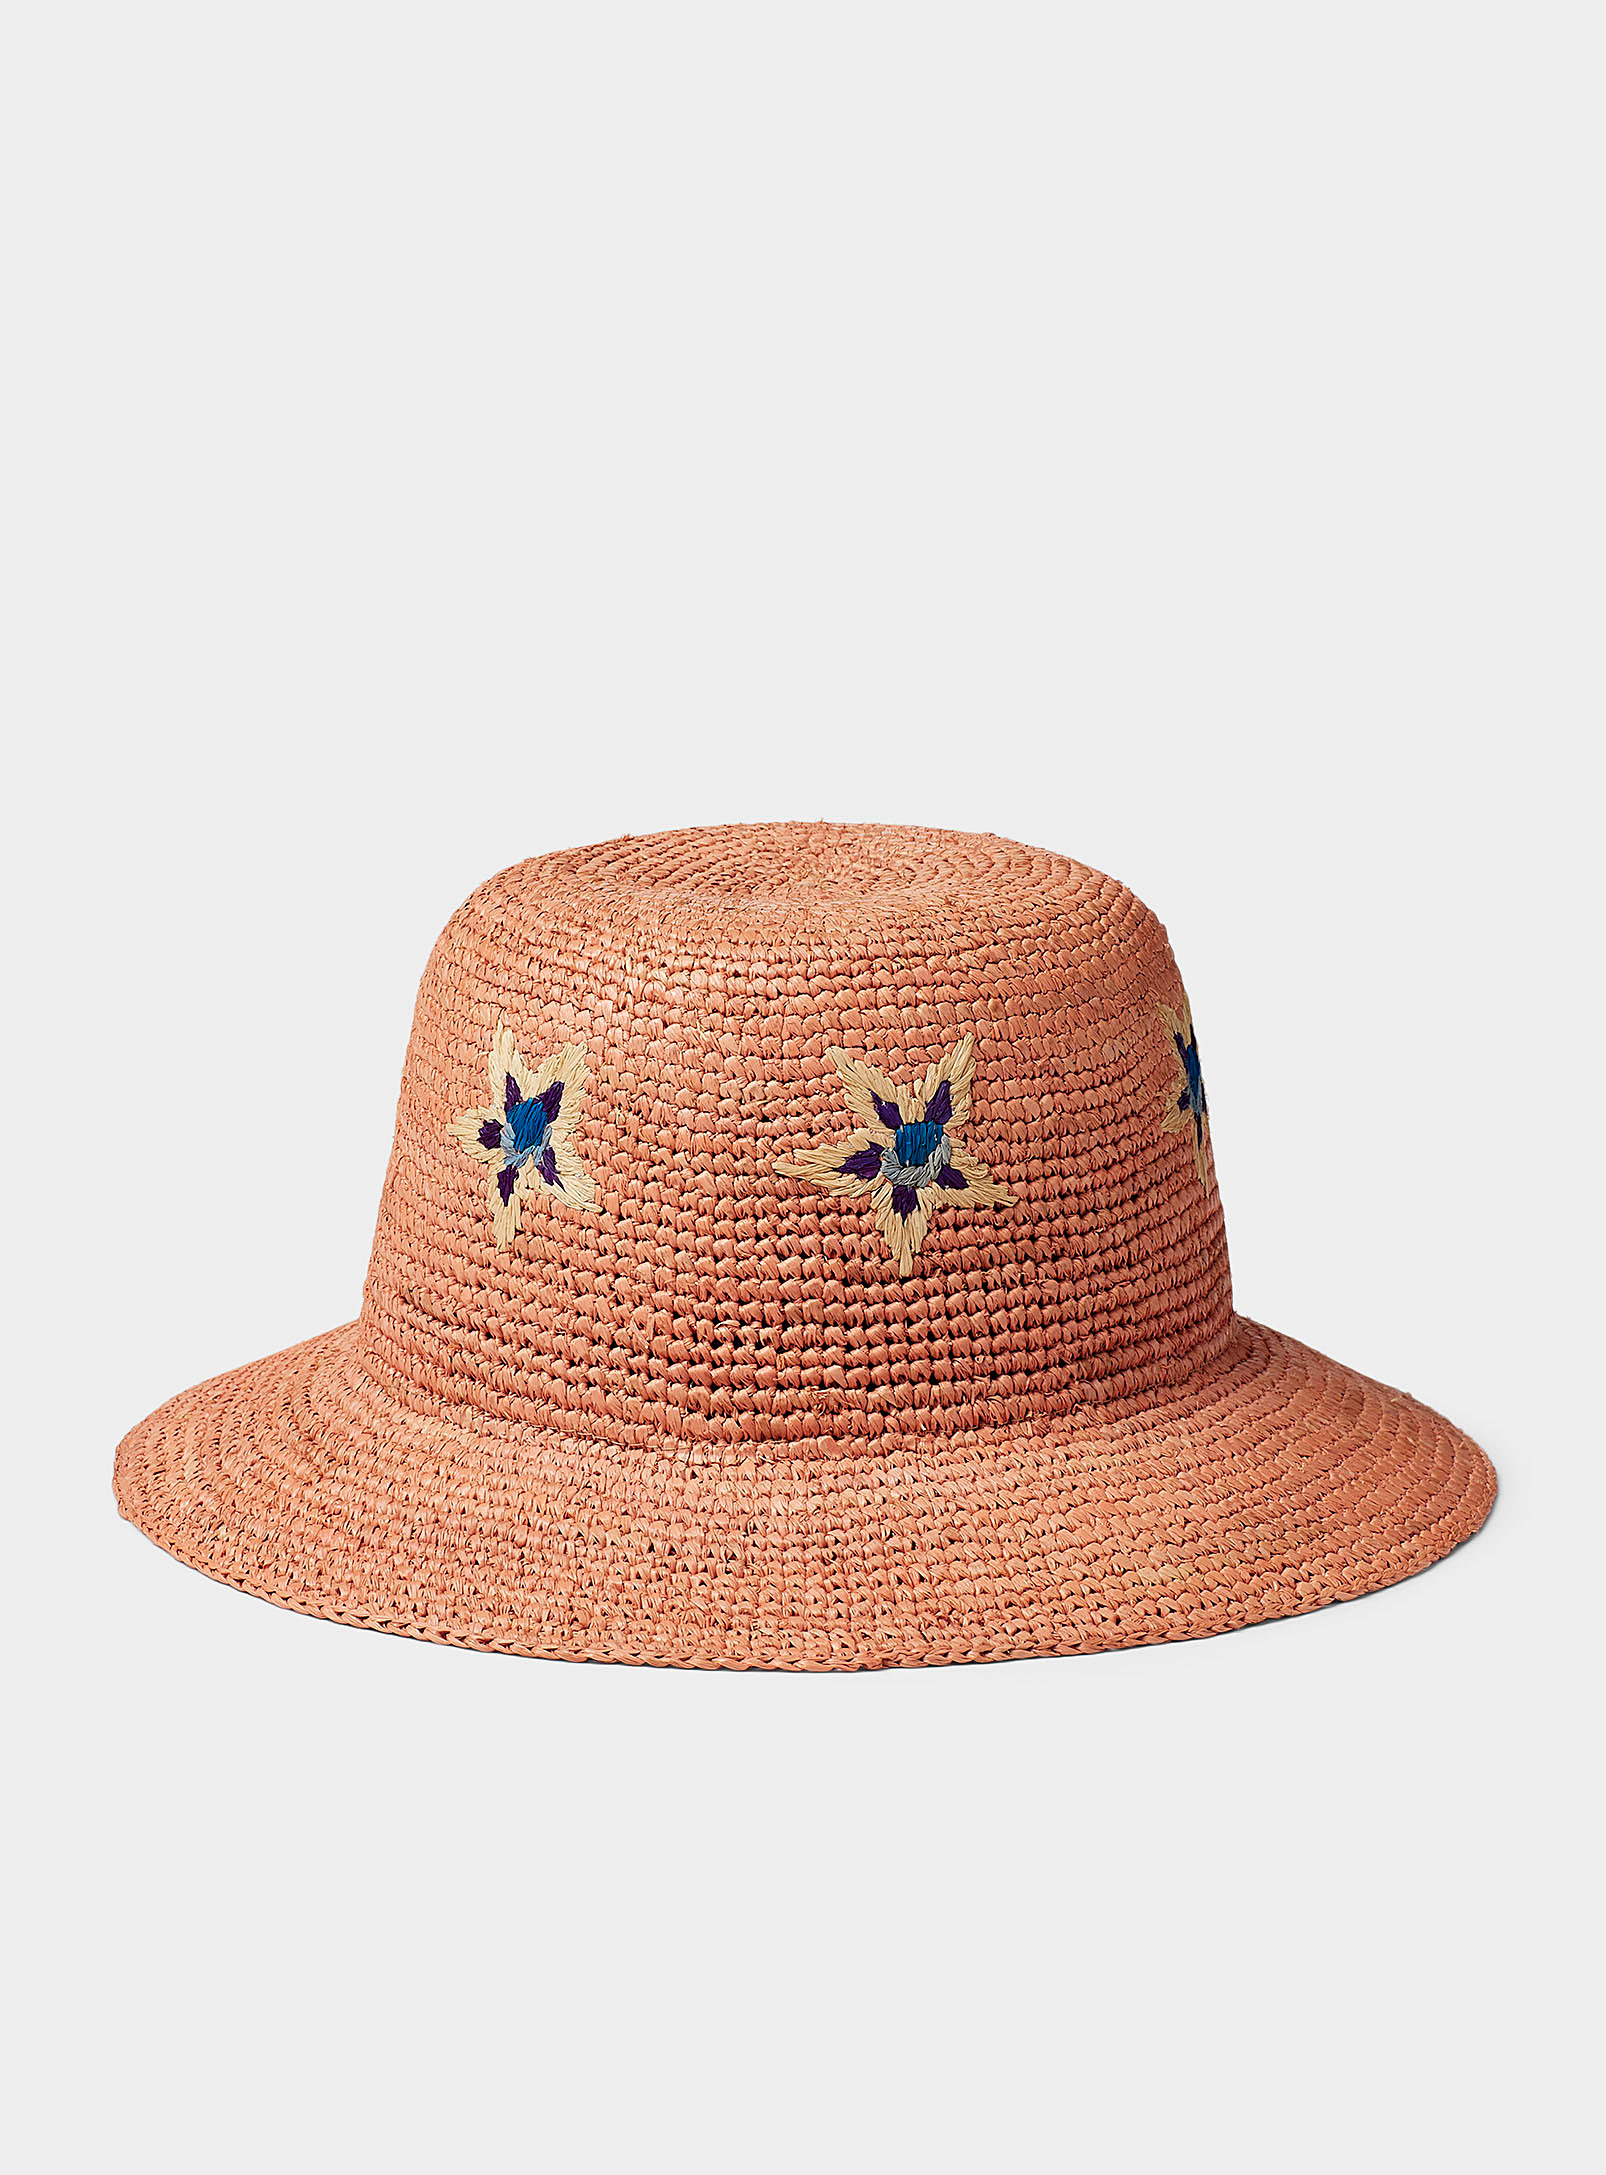 Paul Smith - Le chapeau de paille coloré Ibiza